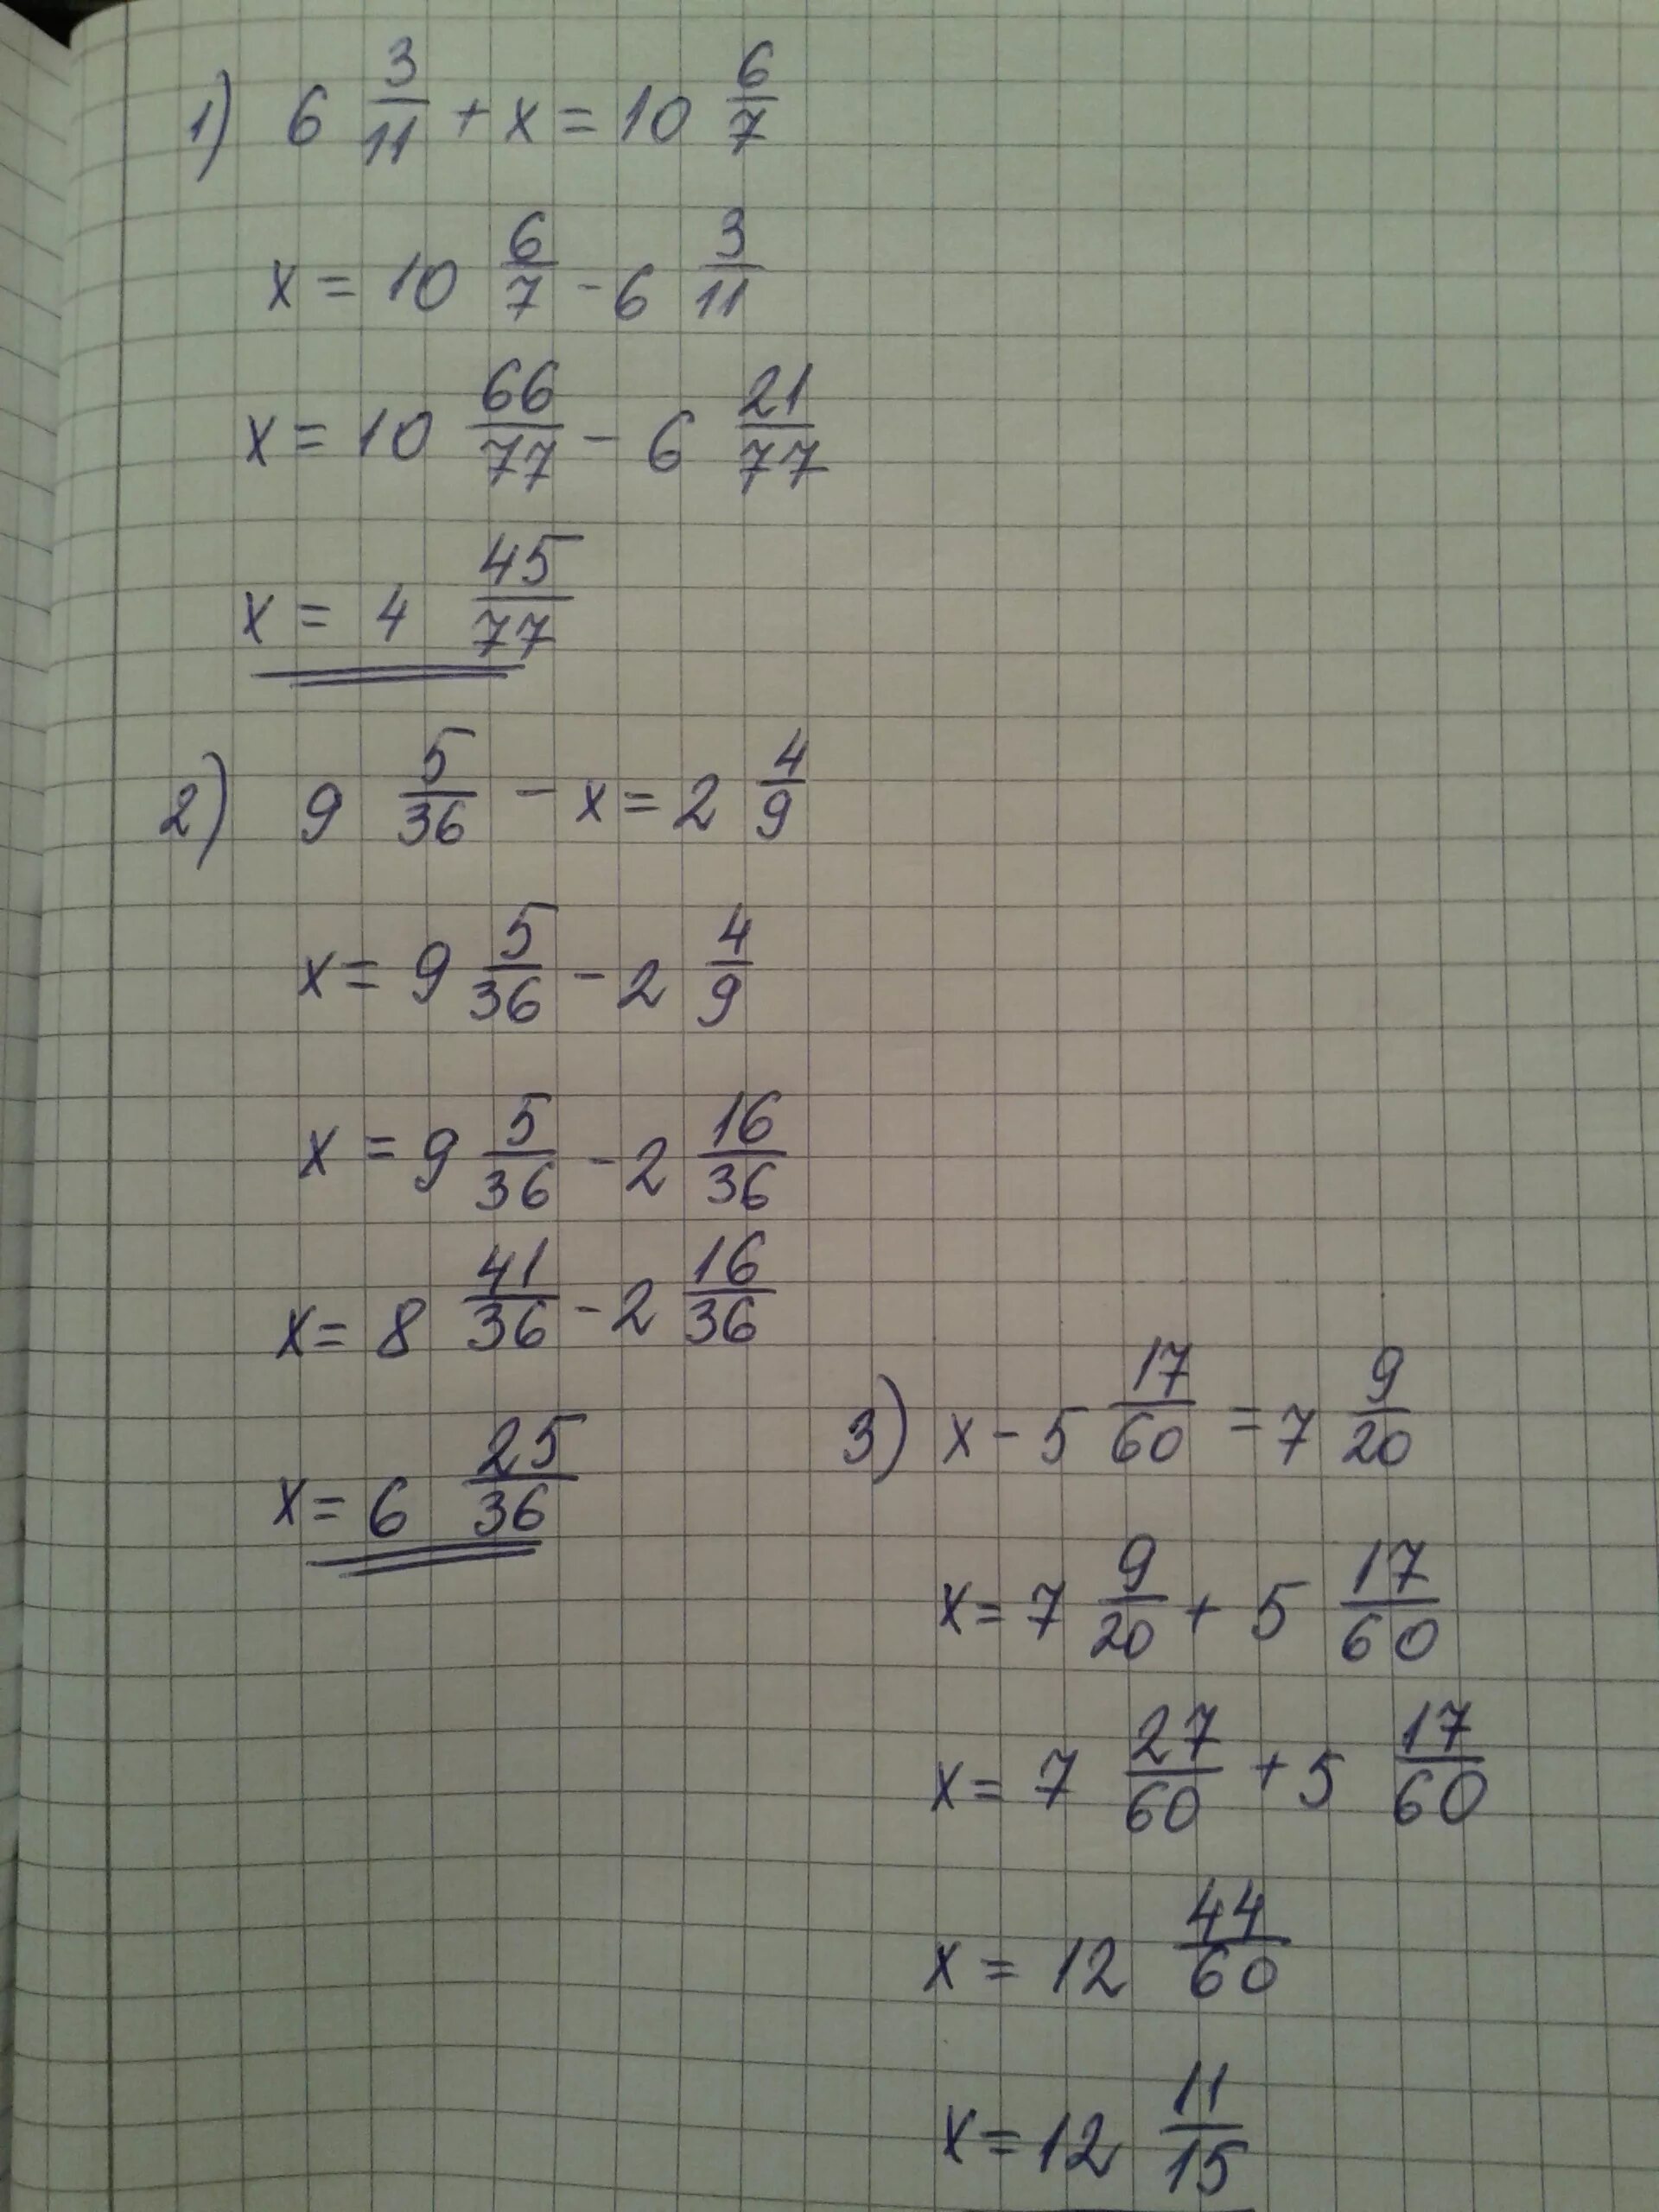 Решите уравнение 9 2 4х 7. Х2-11х/6+1/2. Х-3 7/9=5 1/6. 7-2х=9-3х 11х=6+5(2х-1). (Х-1):2-(У-1):6=5/3.